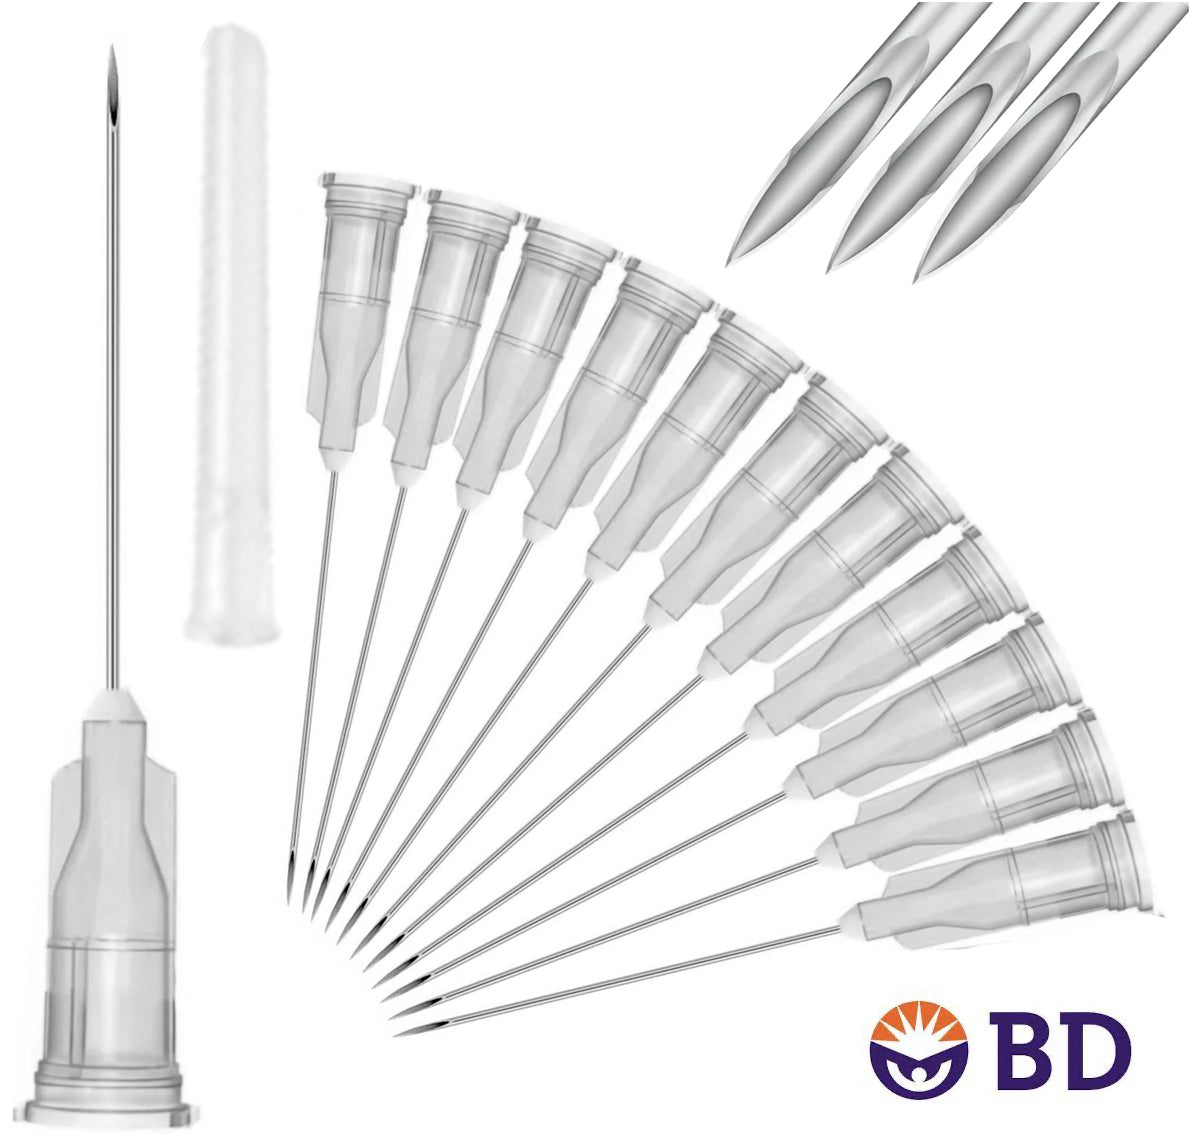 BD 22G x 1.5" Medical Needle (10pk)